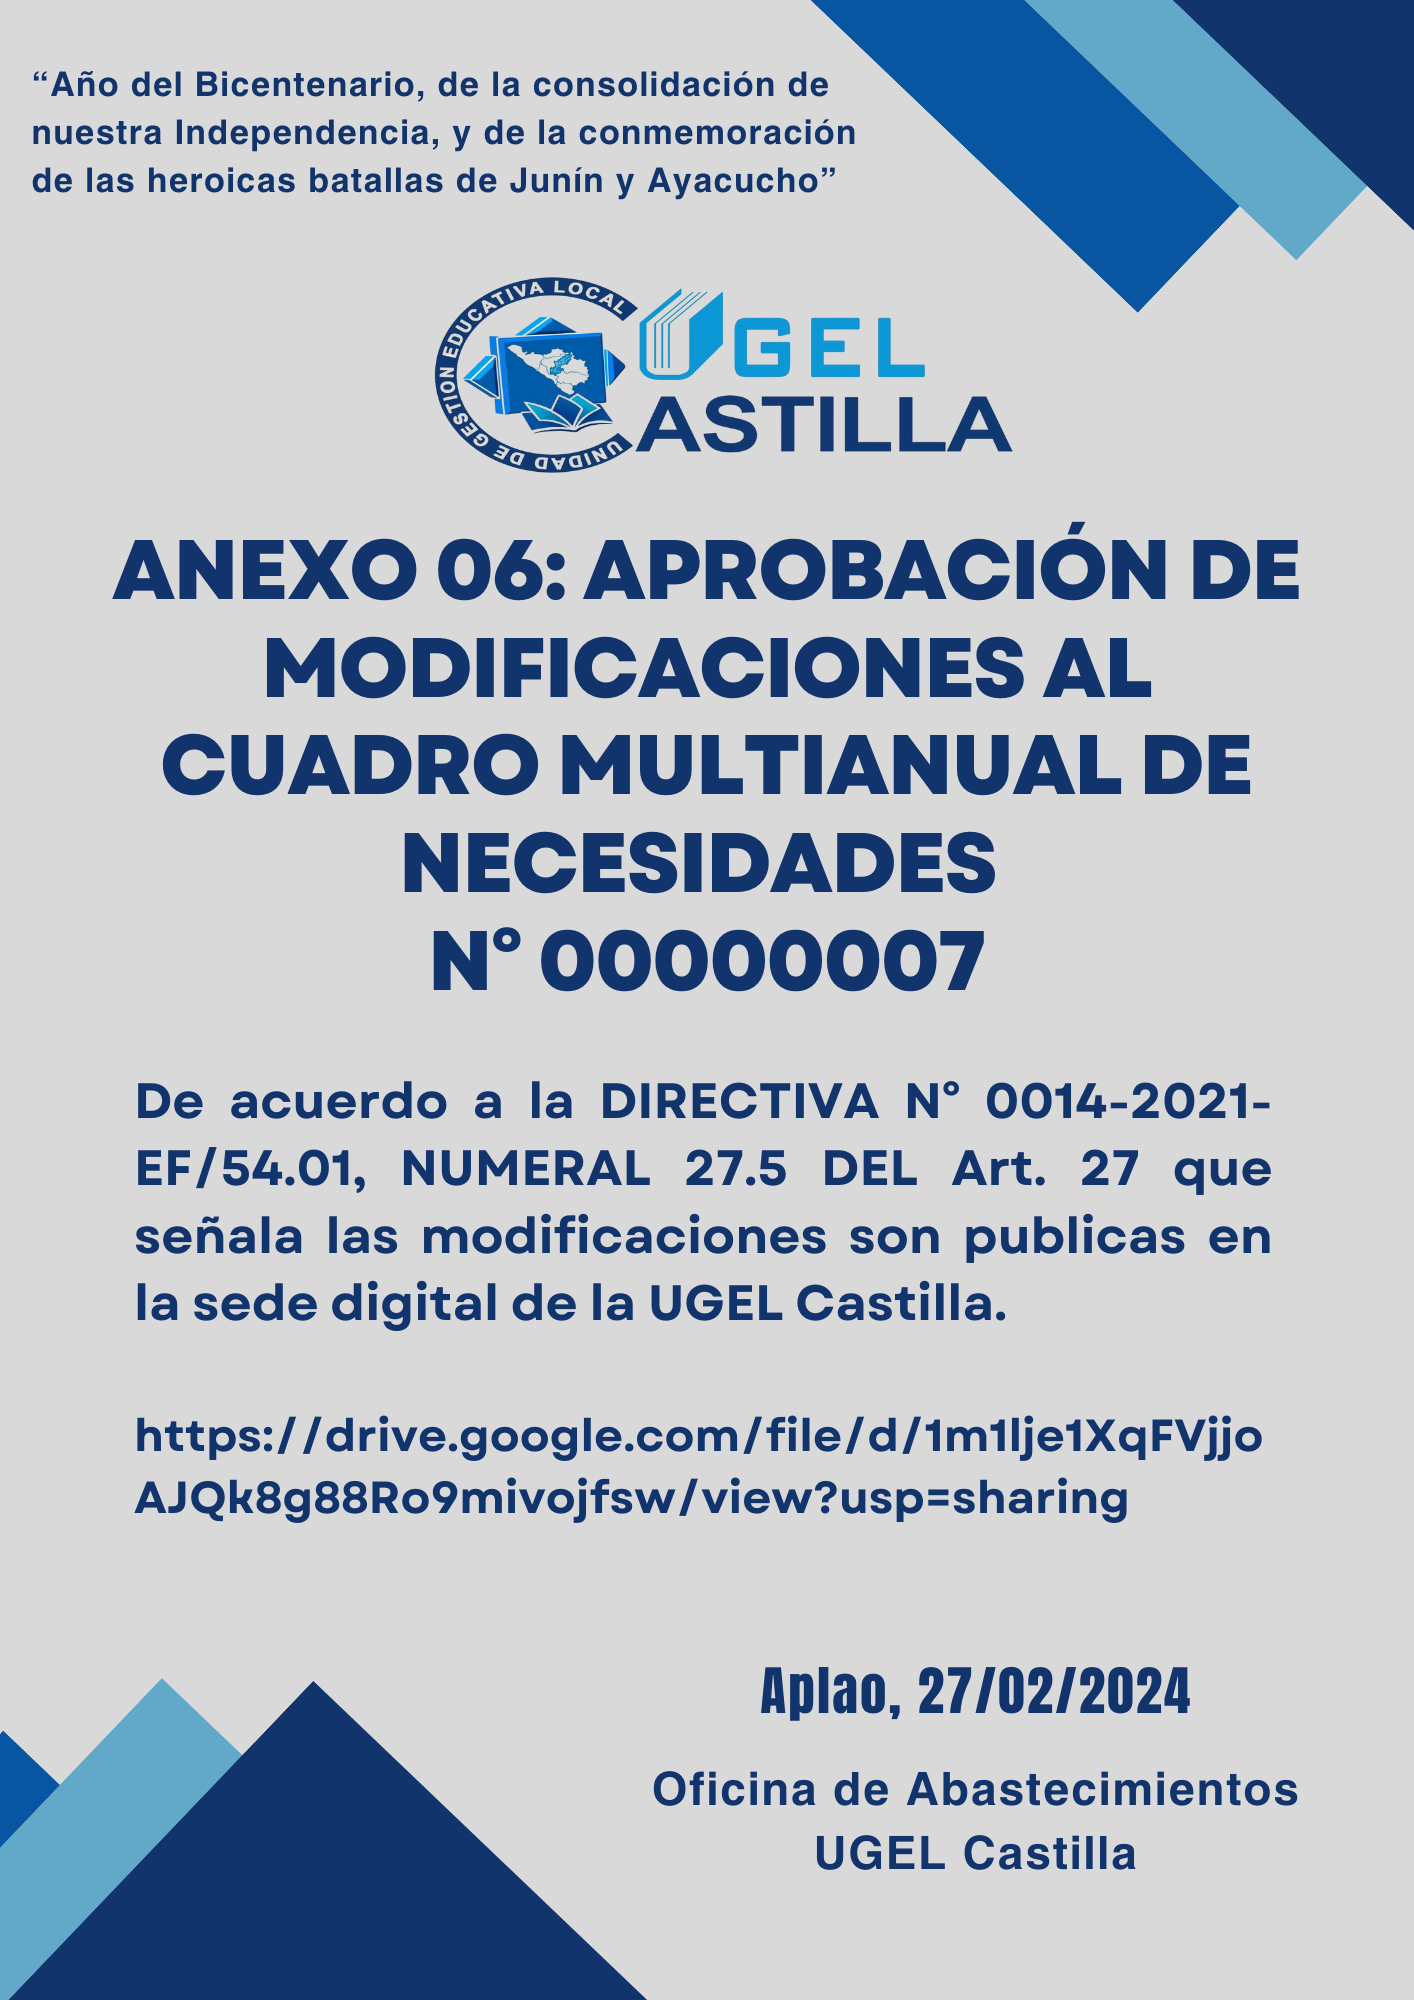 Vista preliminar de documento ANEXO 06 APROBACIÓN DE MODIFICACIONES AL CUADRO MULTIANUAL DE NECESIDADES N° 00000007 UGEL Castilla